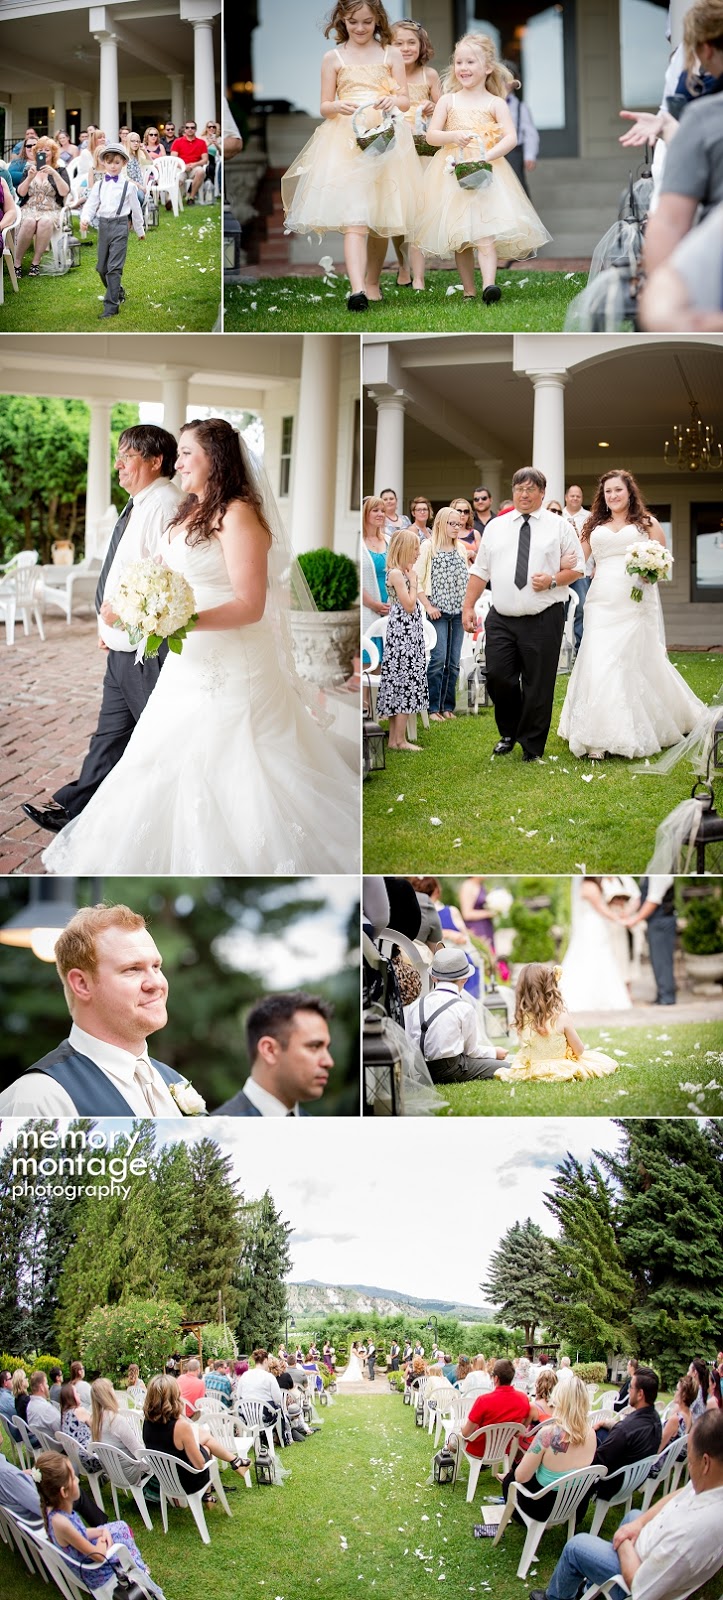 Peshastin Wedding Photography, Wenatchee Wedding Photography, Beecher House Hill Weddings, Memory Montage Photography, Harry Potter Themed Wedding